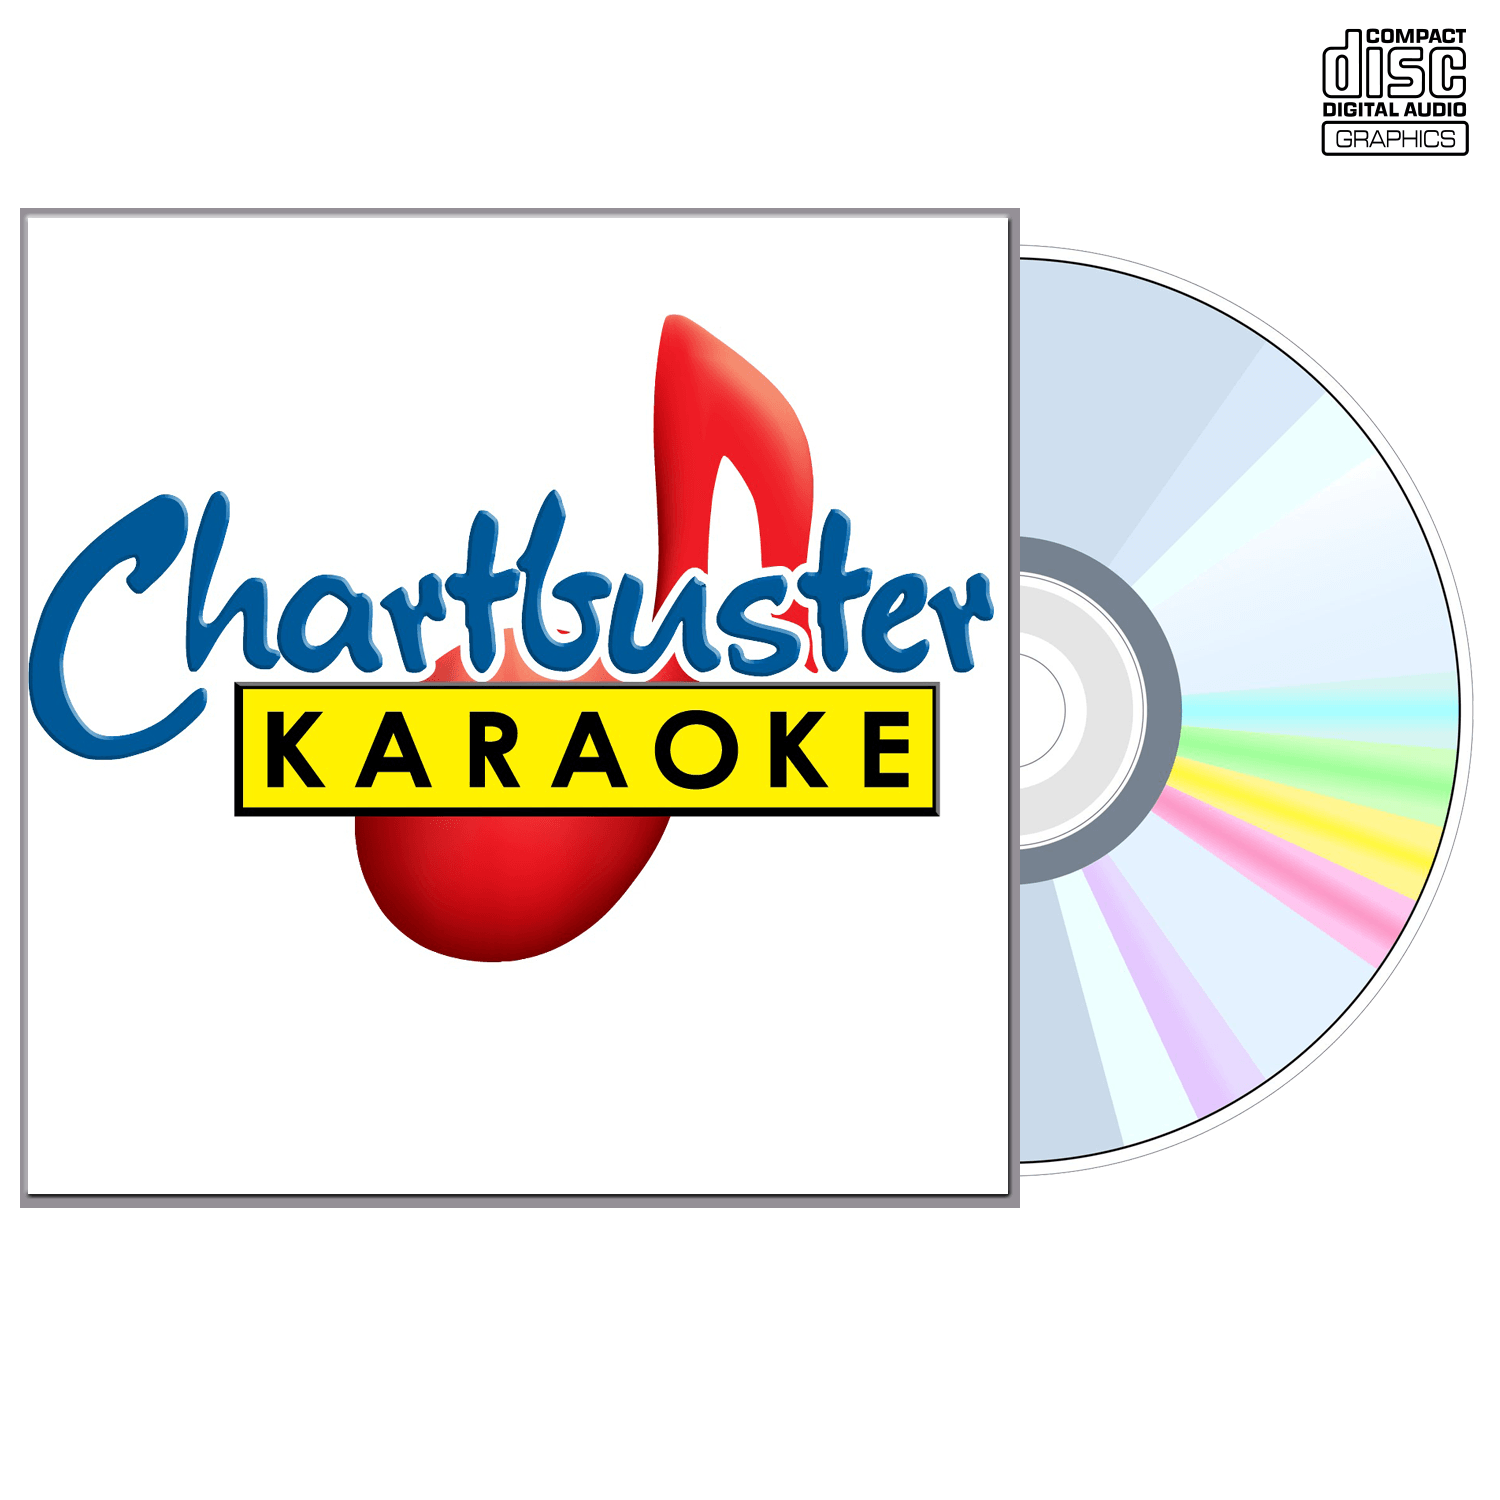 Neal Mccoy Vol 1 - CD+G - Chartbuster Karaoke - Karaoke Home Entertainment